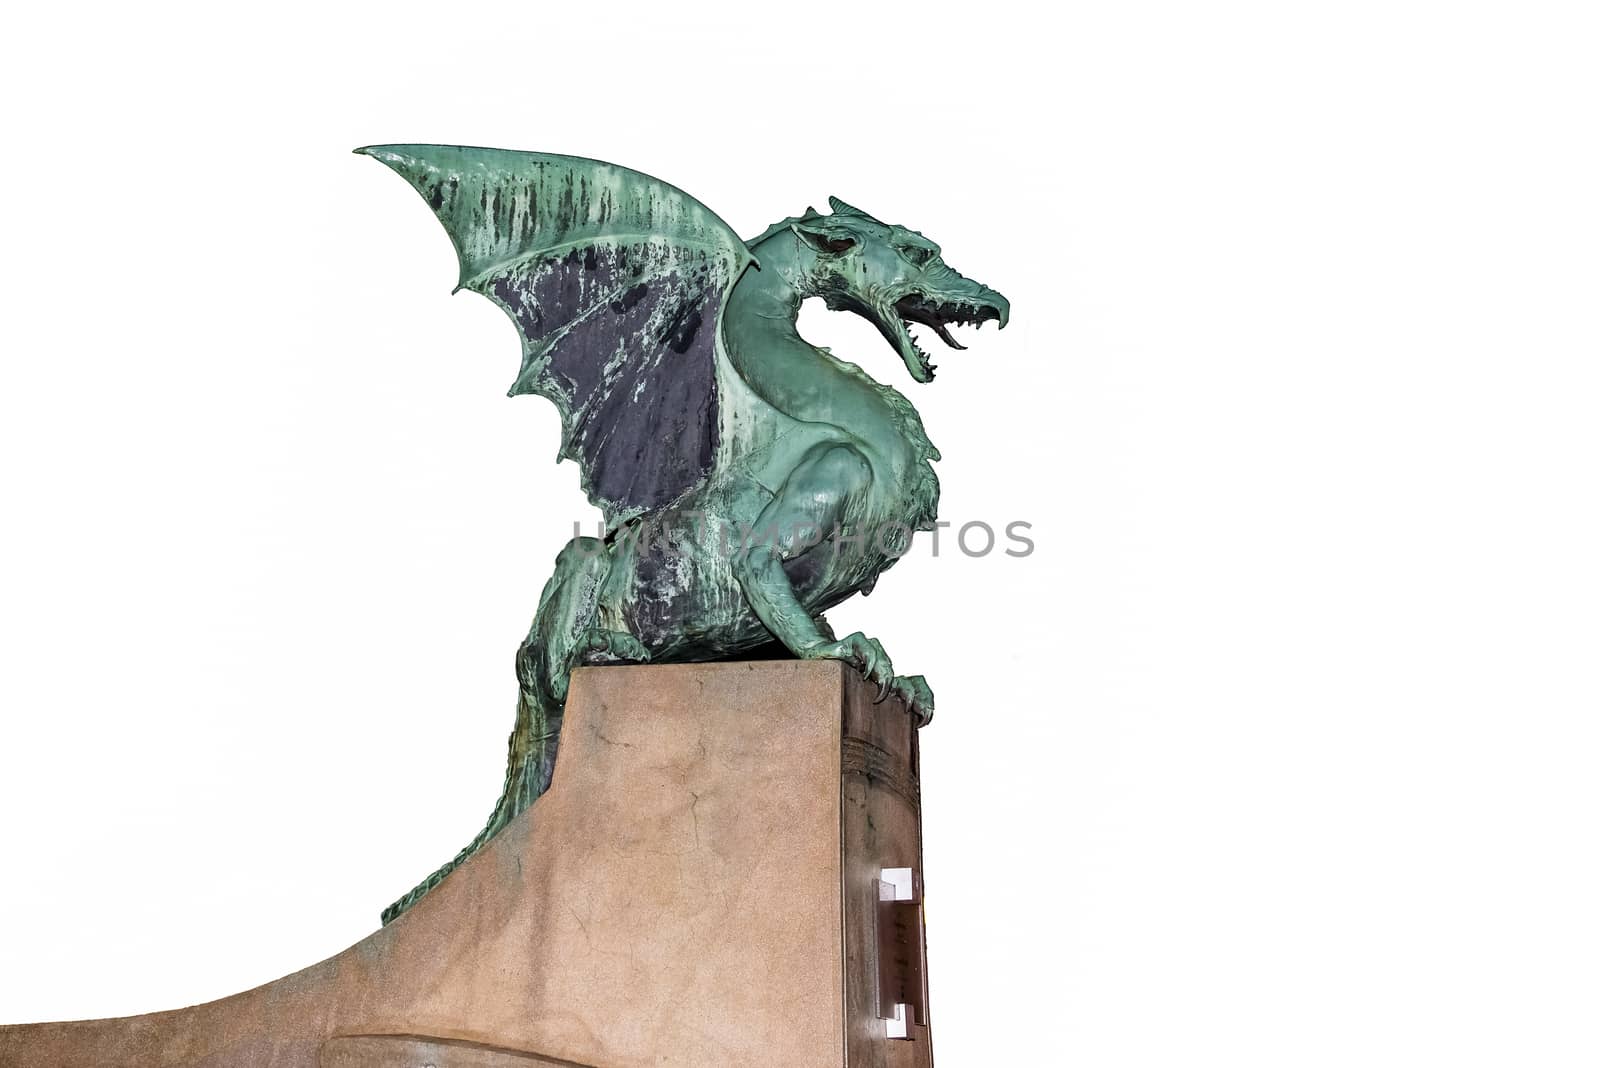 Dragon statue on the Dragon bridge in Ljubljana by asafaric